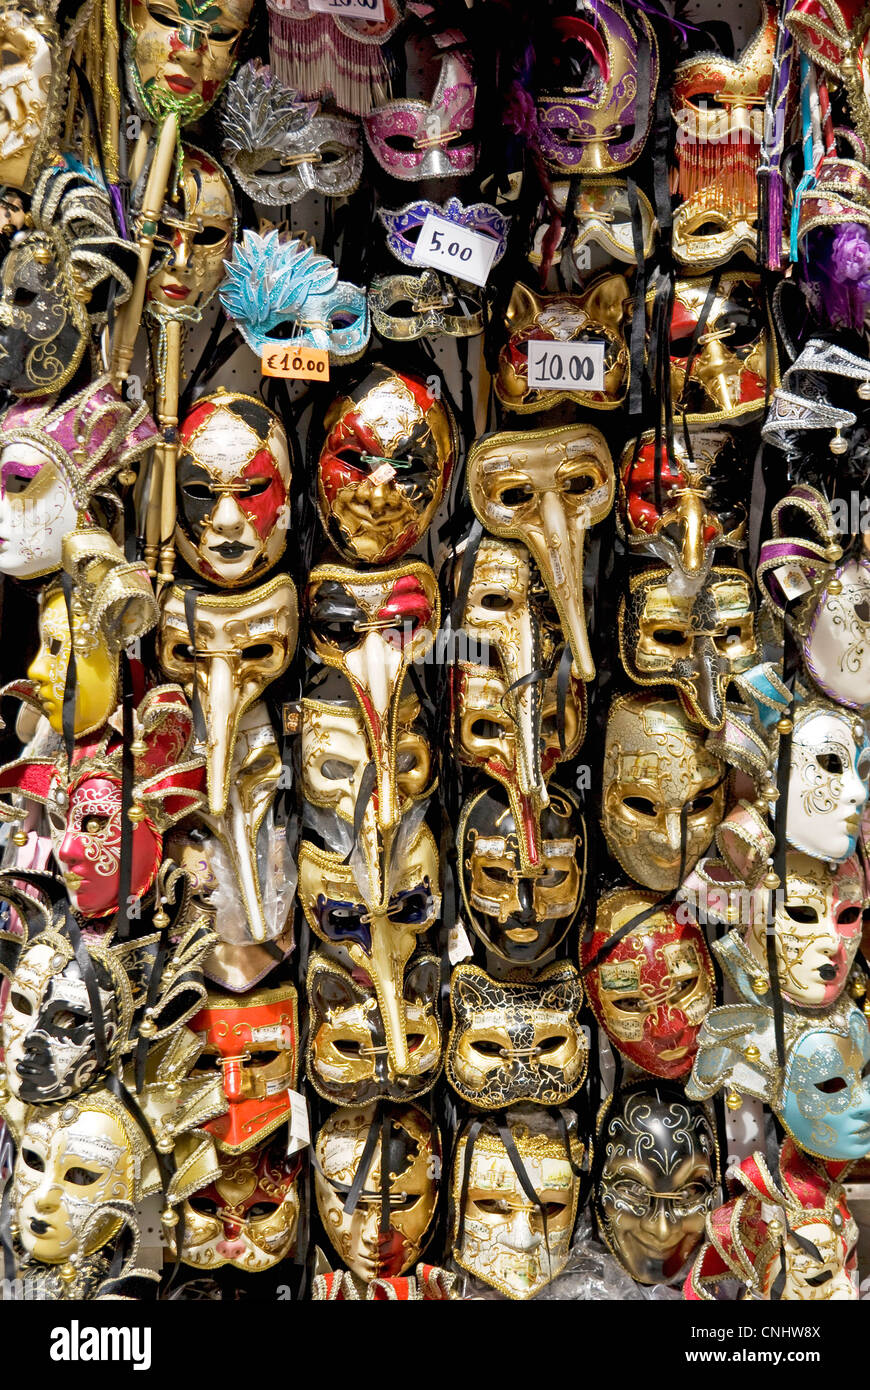 Carnival masks. Venice. Italy Stock Photo